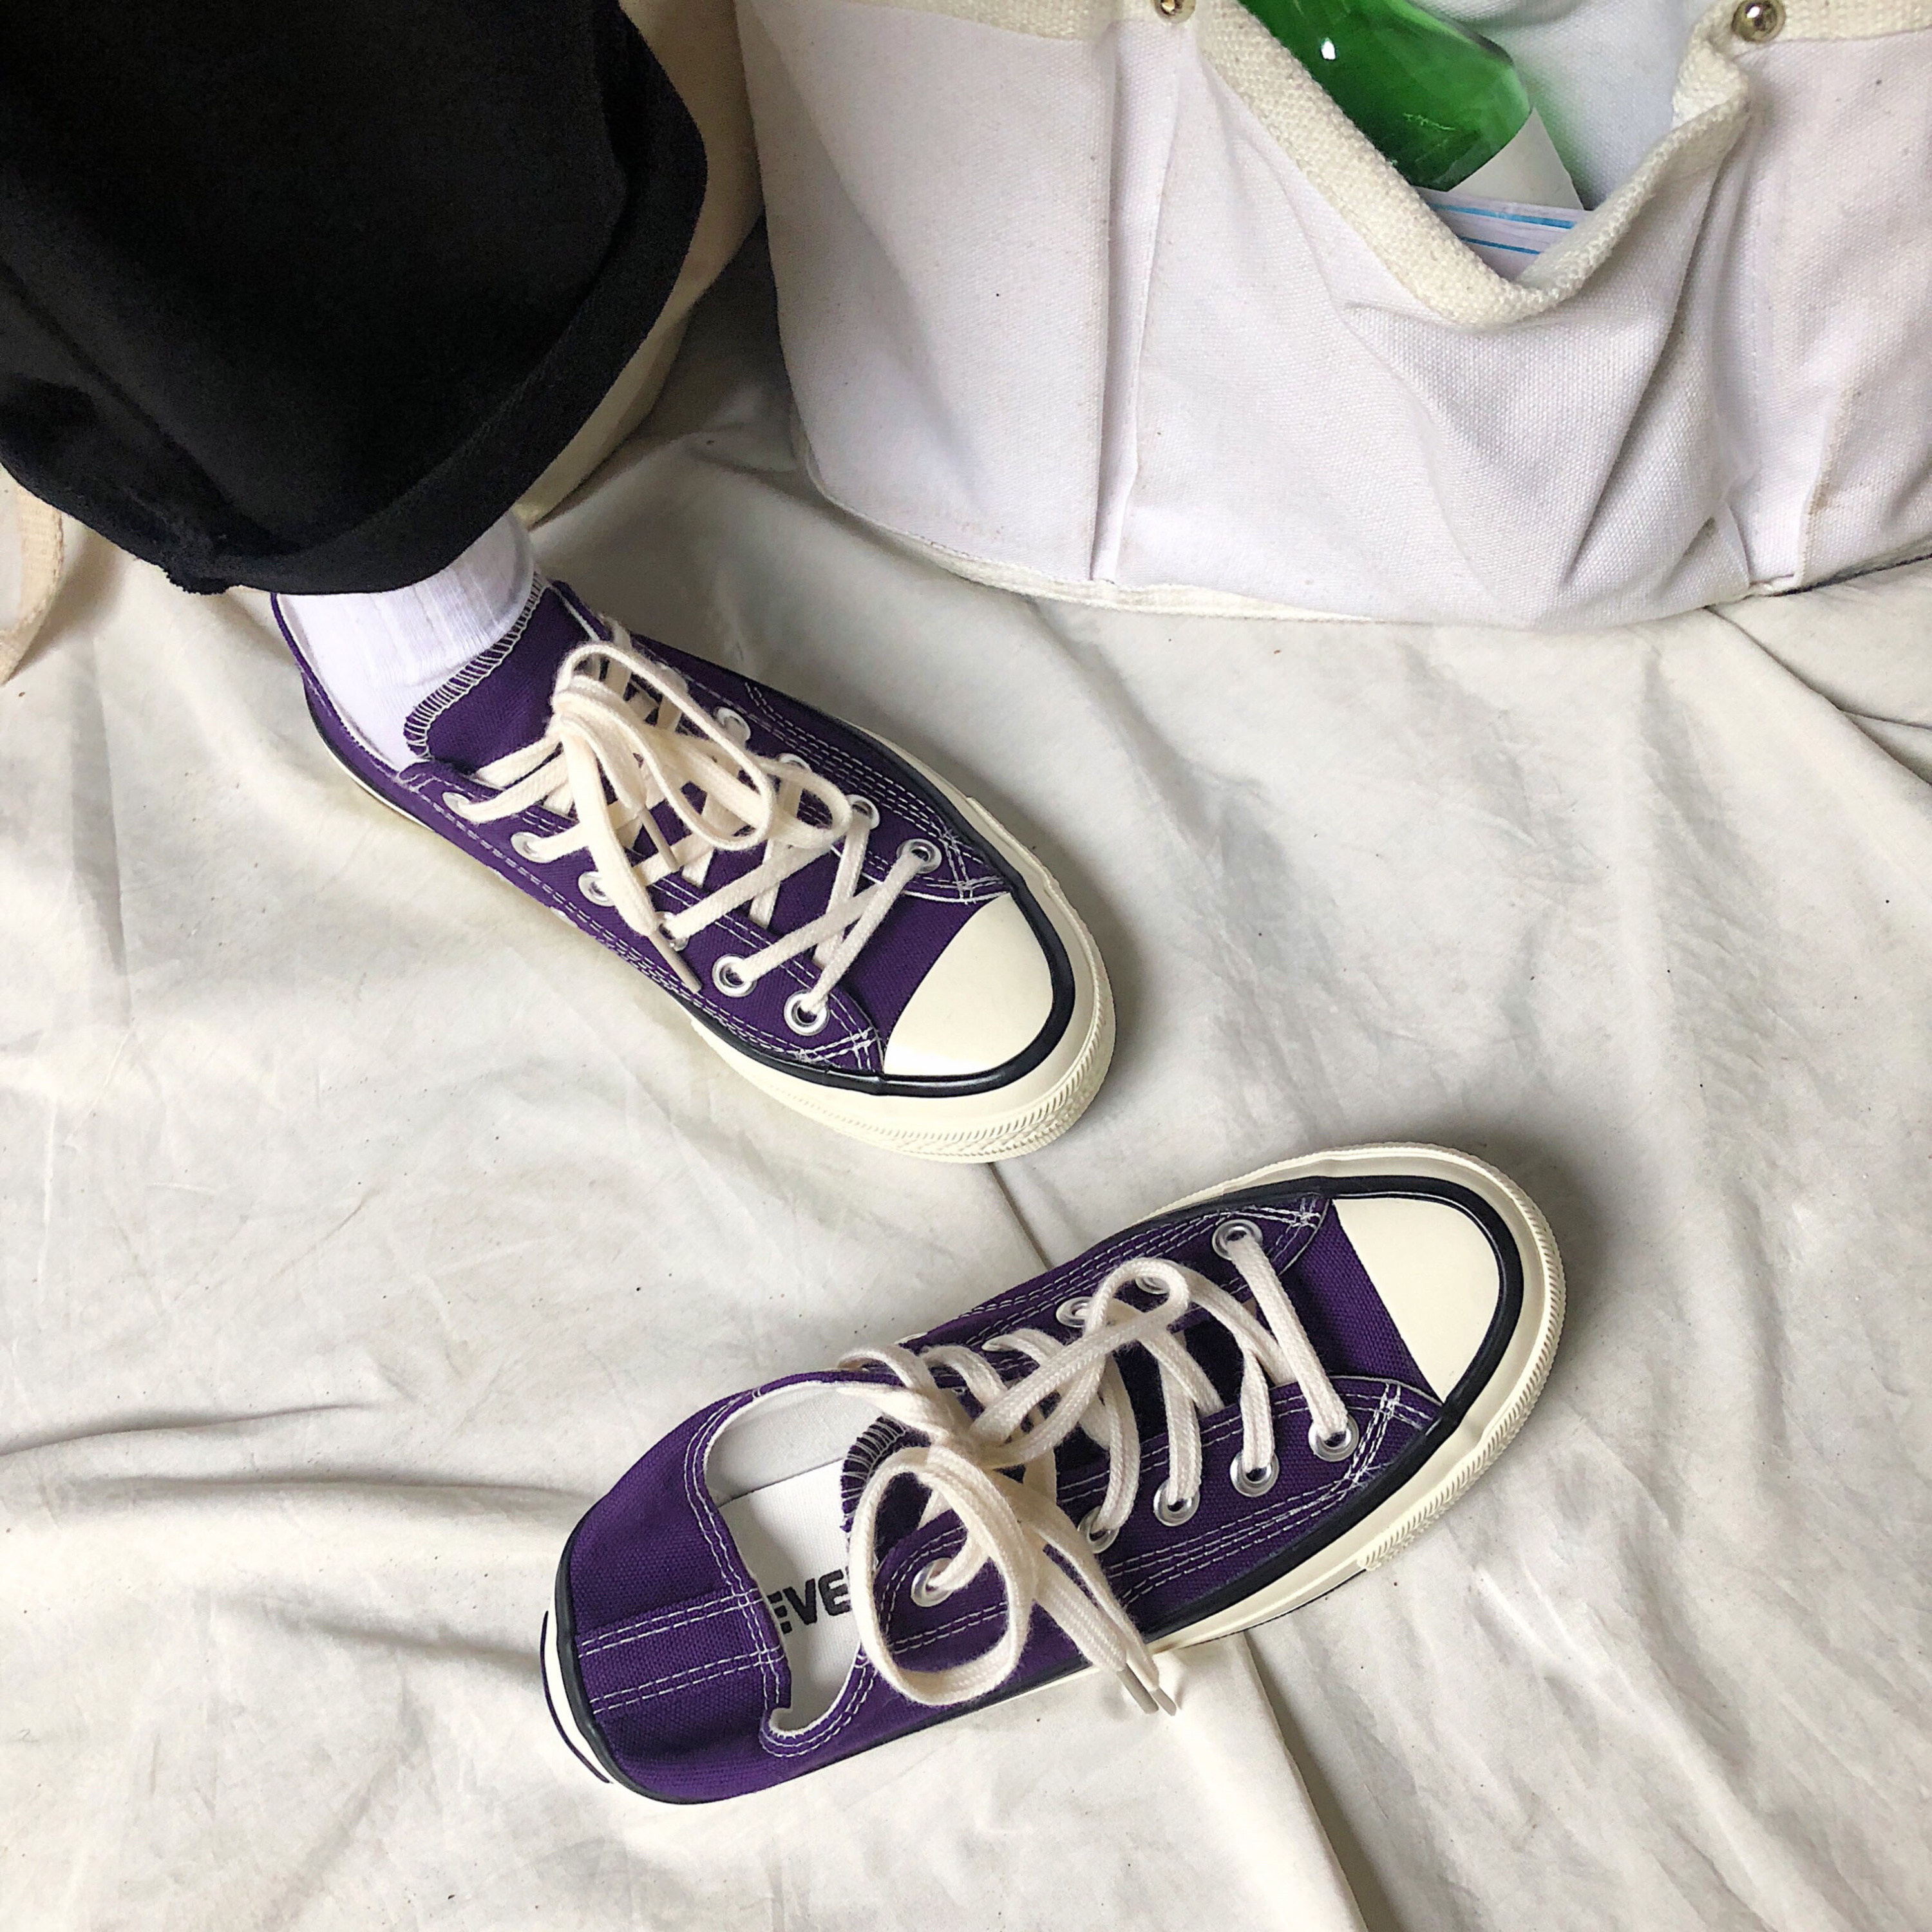 紫色帆布鞋 兔兔宋 韩国街拍万年经典款复古1970s深紫色情侣款学生帆布鞋男女_推荐淘宝好看的紫色帆布鞋